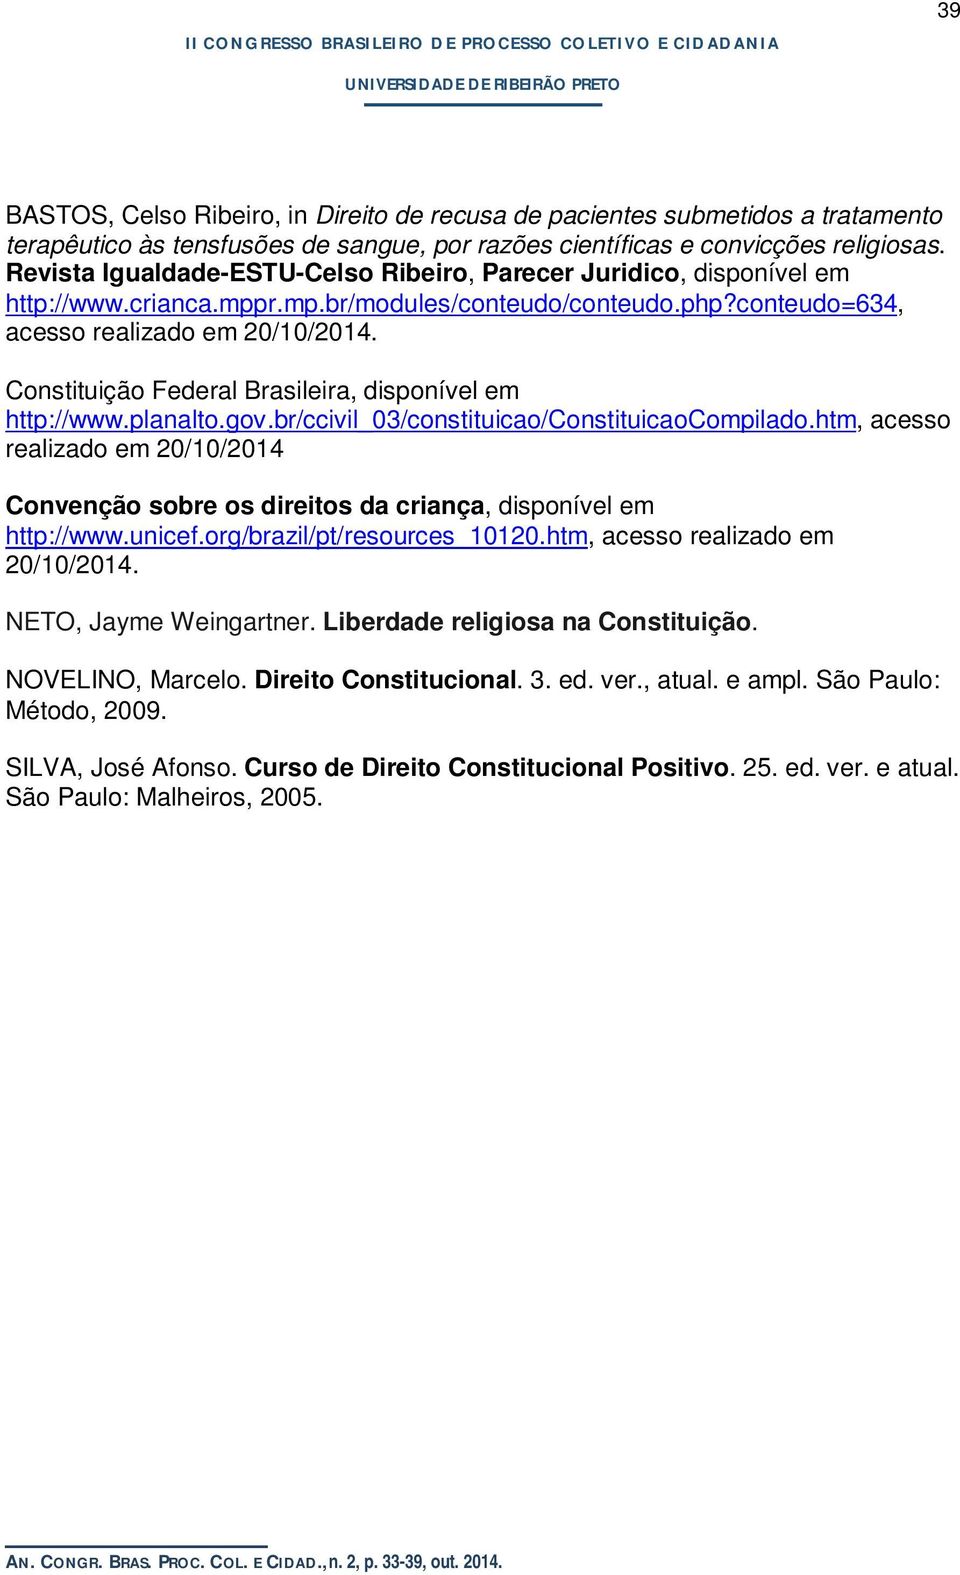 Constituição Federal Brasileira, disponível em http://www.planalto.gov.br/ccivil_03/constituicao/constituicaocompilado.